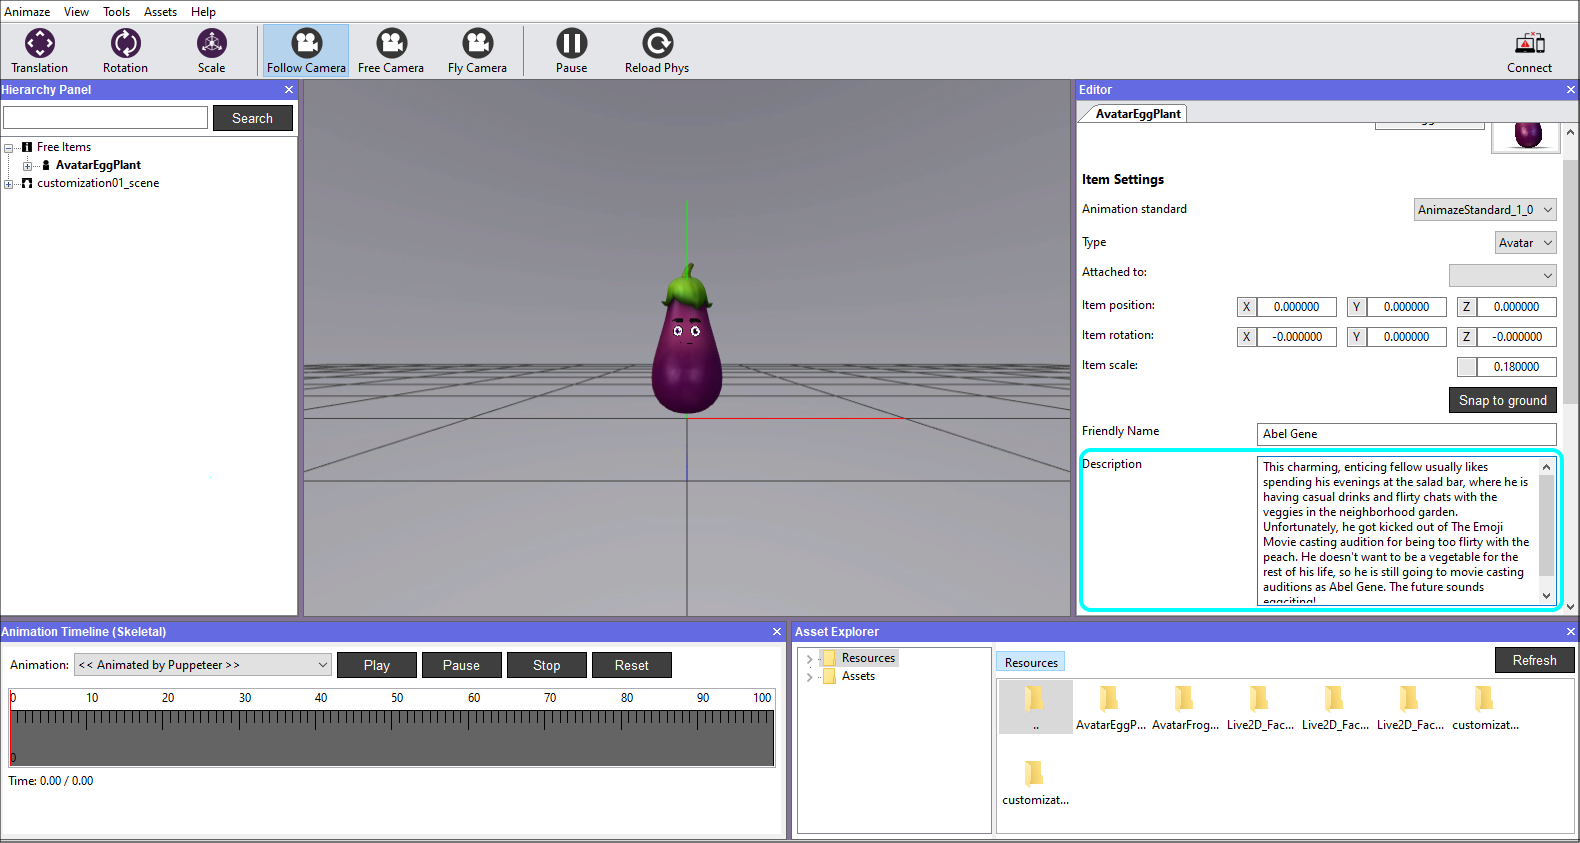 Learn how to use Animaze by Facerig | 3D Avatars